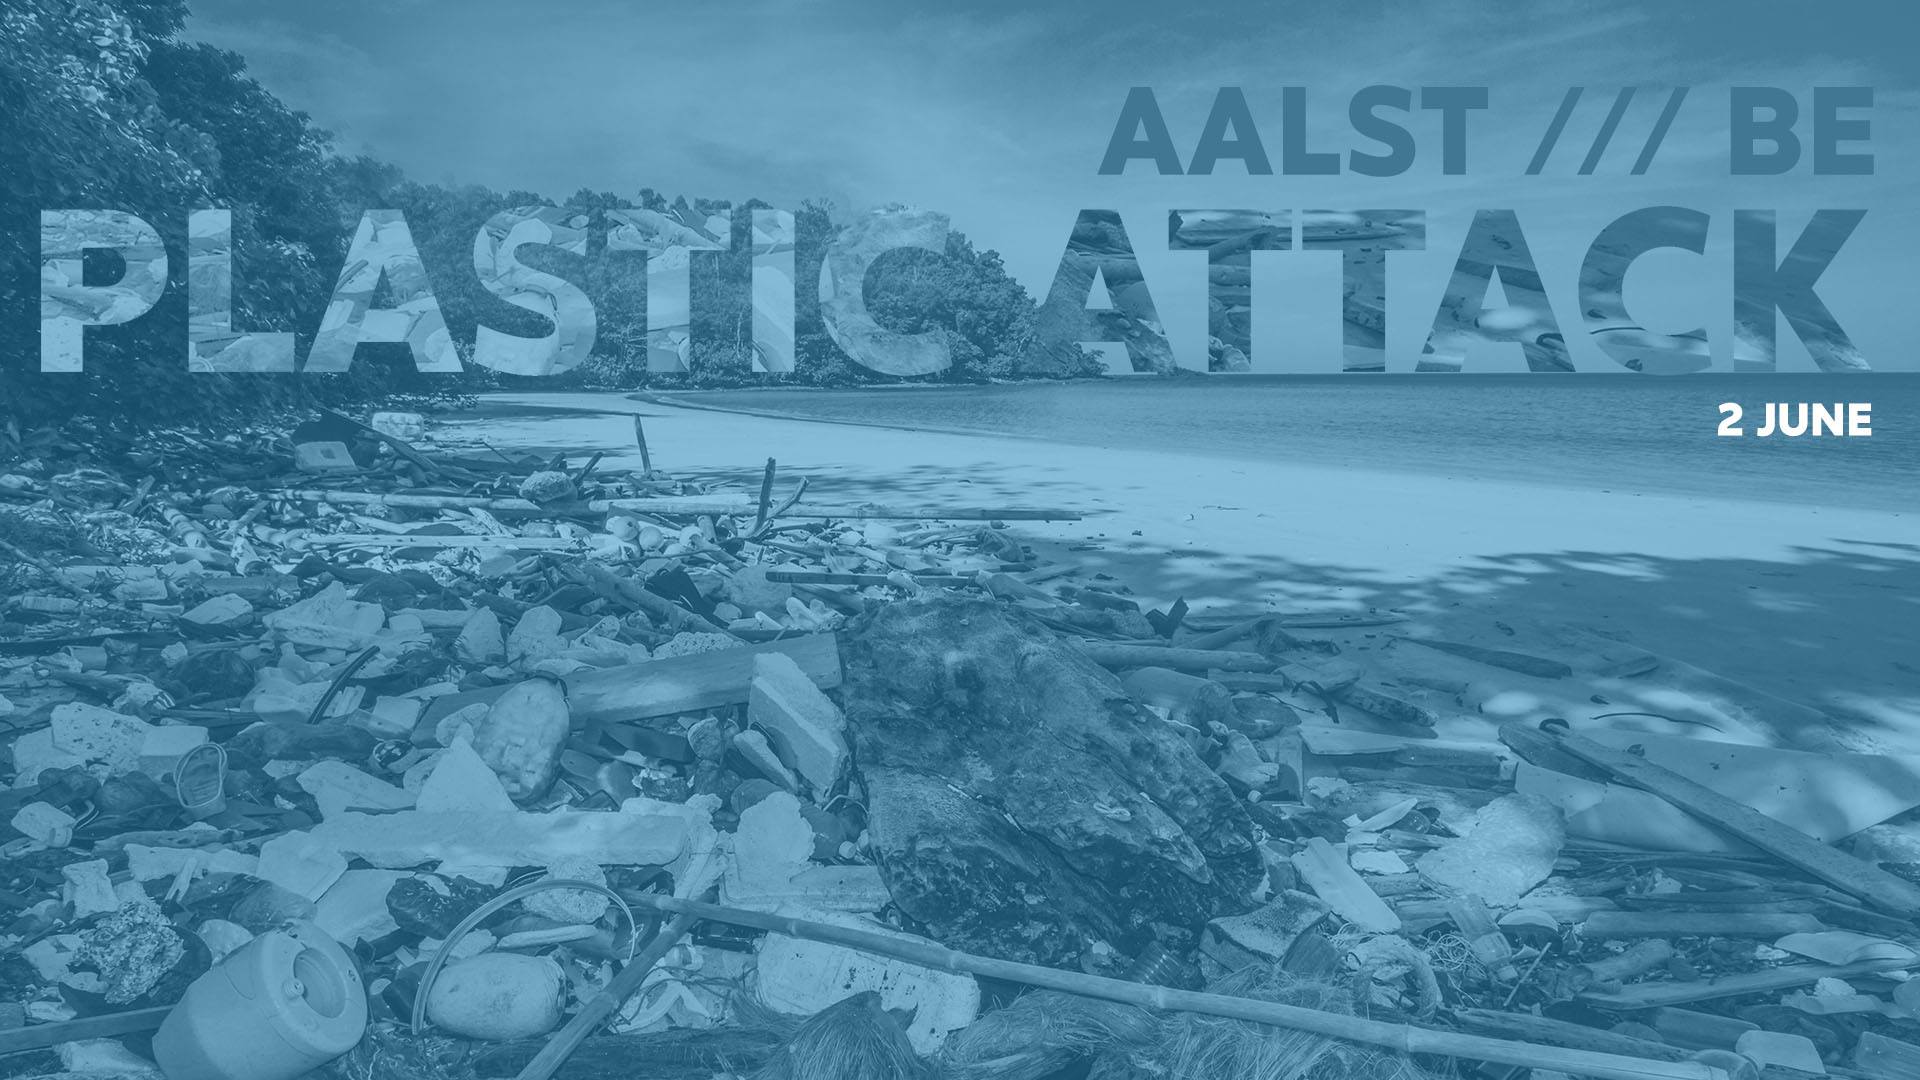 18 05 31 Plastic Attack Zaterdag 2 juni 2018